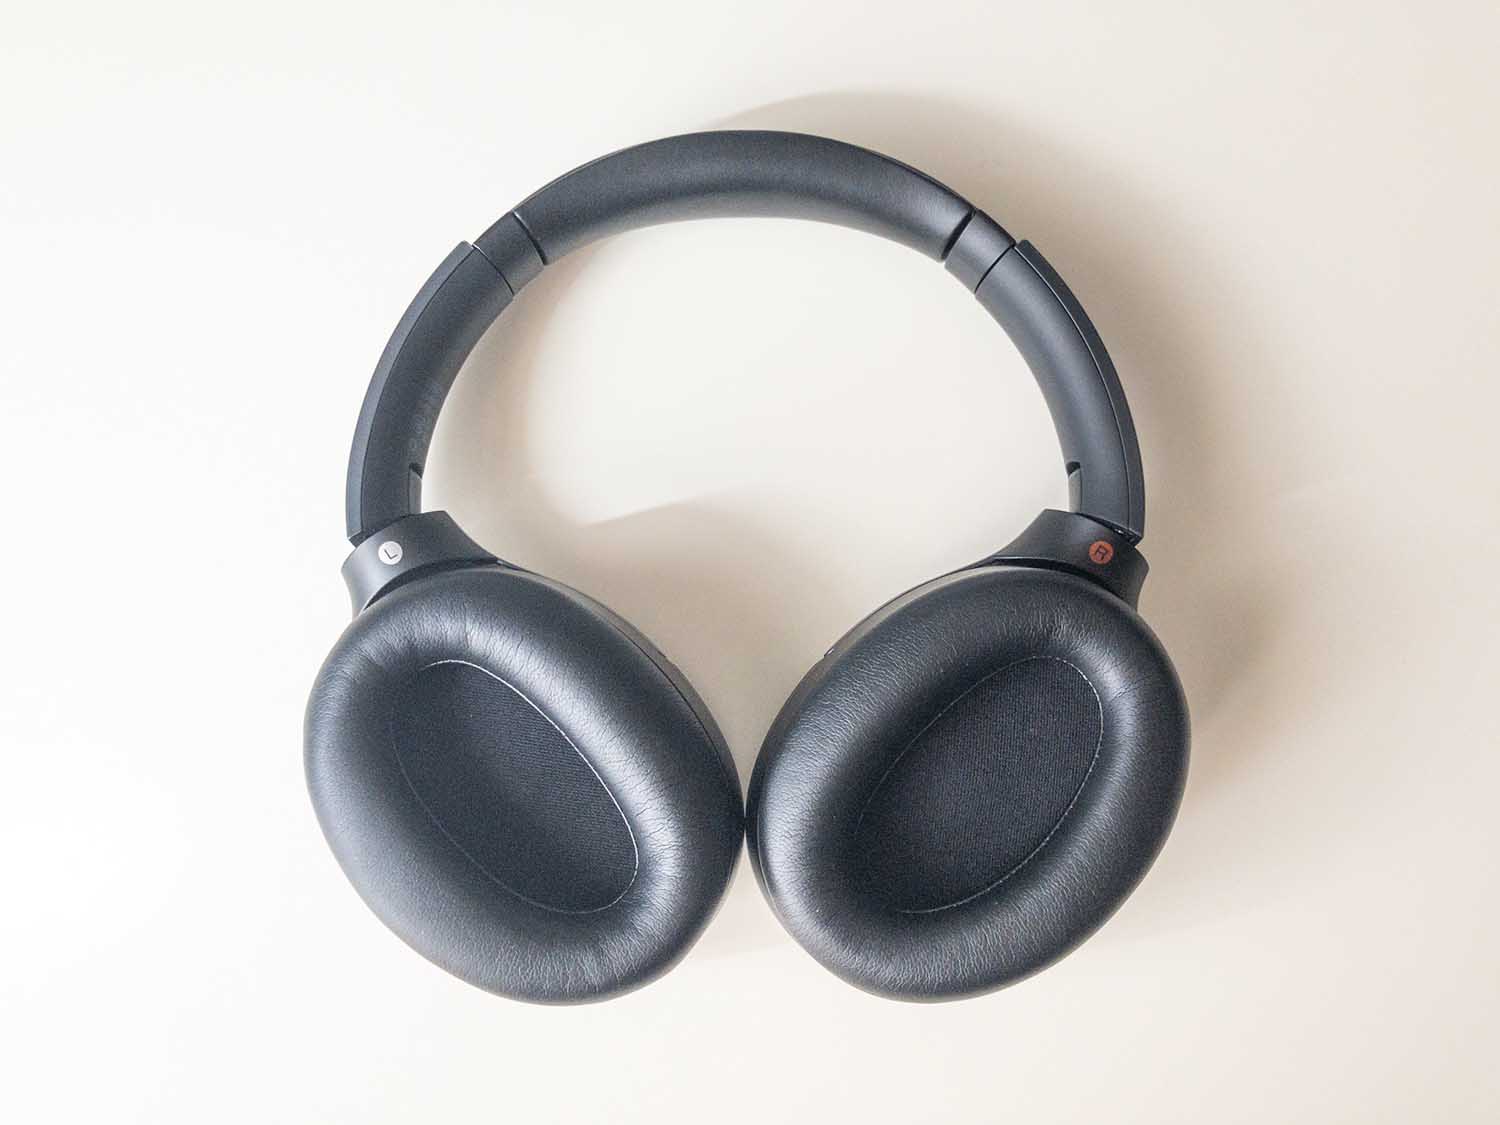 SONYヘッドホン 「WH-1000XM2」をレビュー。最高のノイキャンとダイナミックな音質! | ルイログ